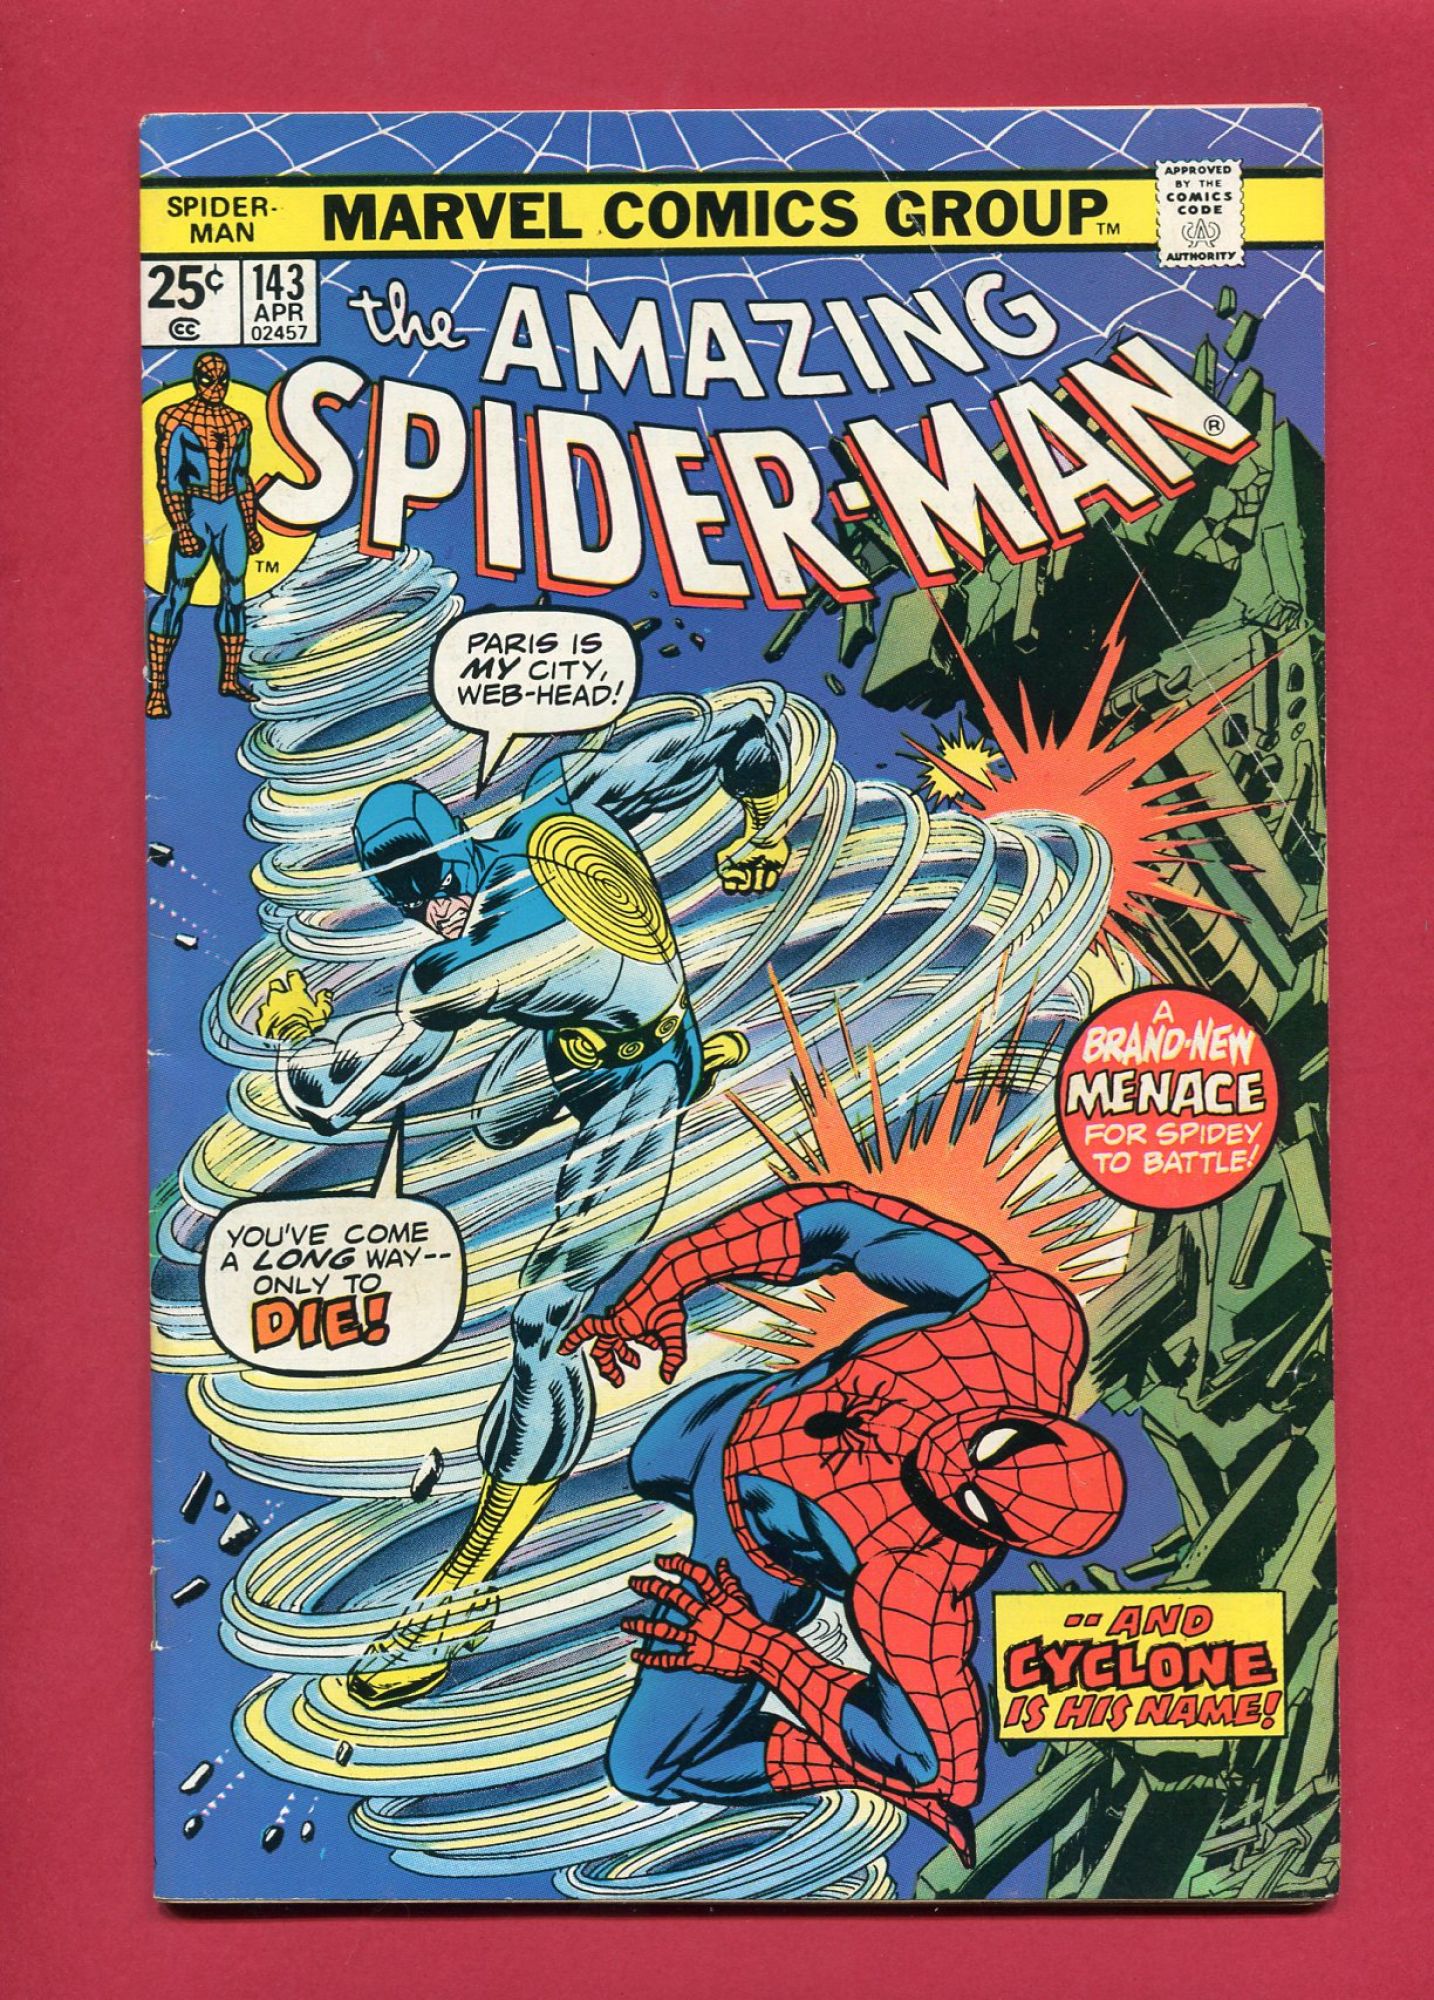 Amazing Spider-Man #143, Apr 1975, 6.0 FN